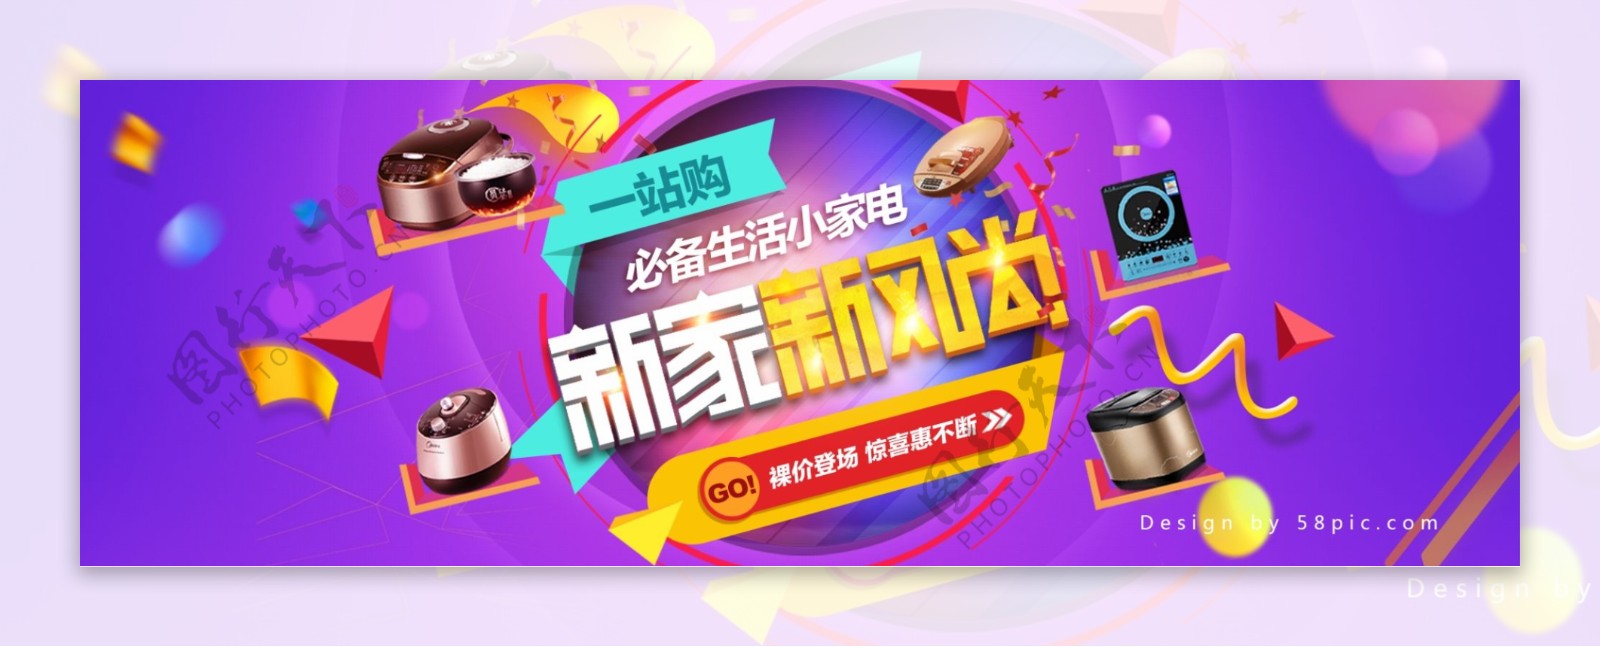 紫色时尚潮流电磁炉电饭煲新家新风尚家装嘉年华淘宝电商banner